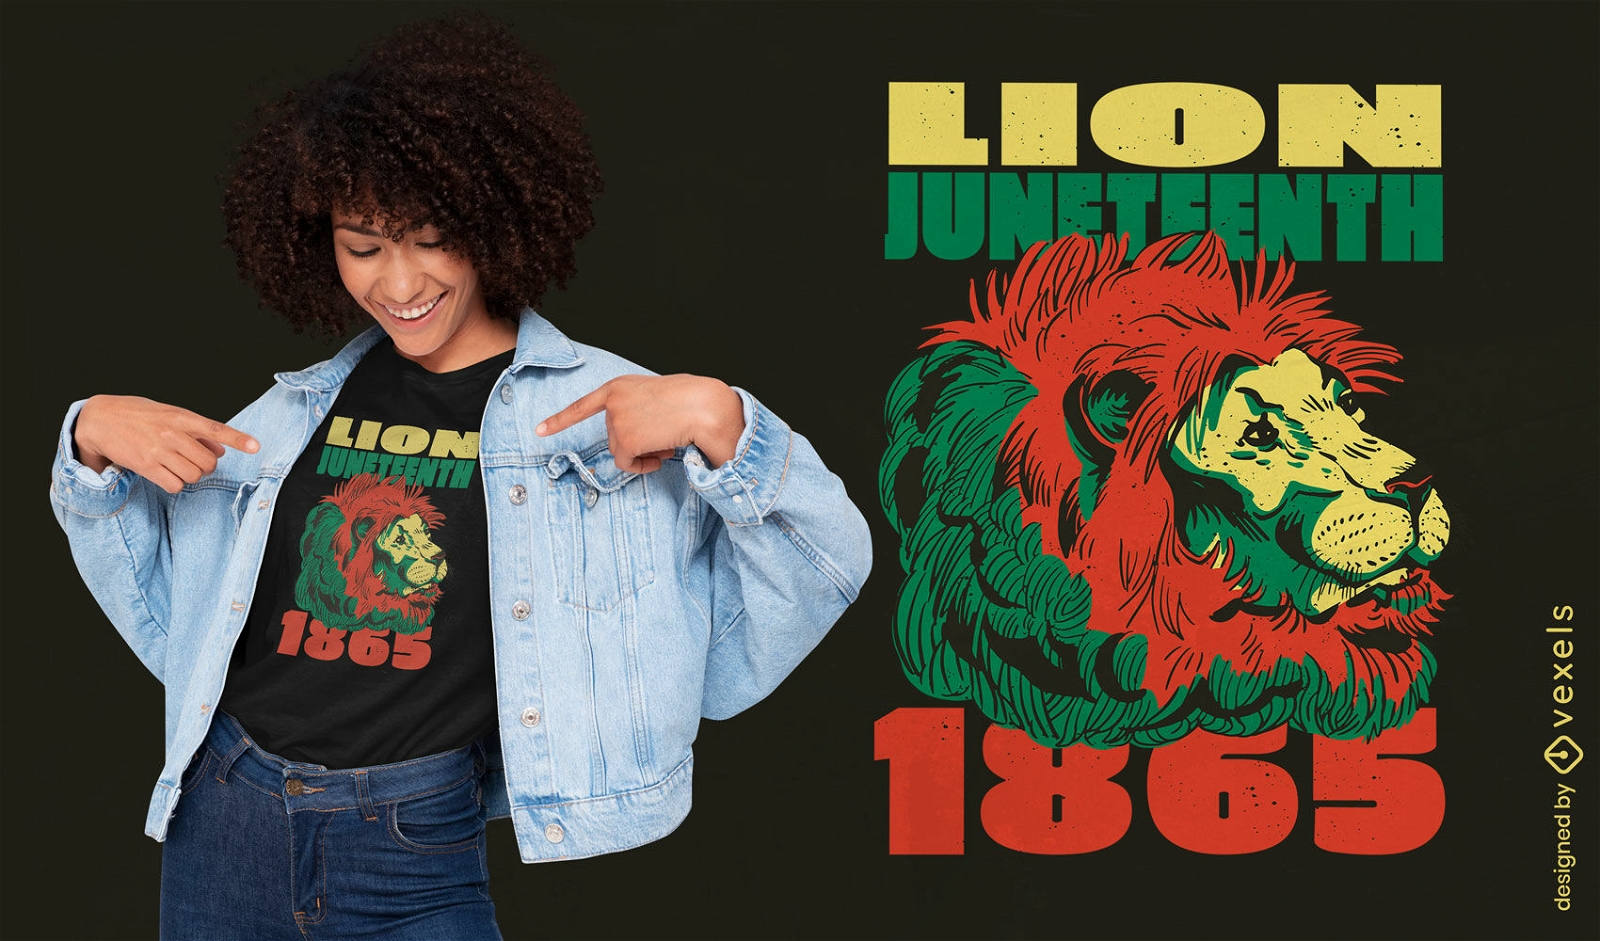 Lion animal juneteenth t-shirt design